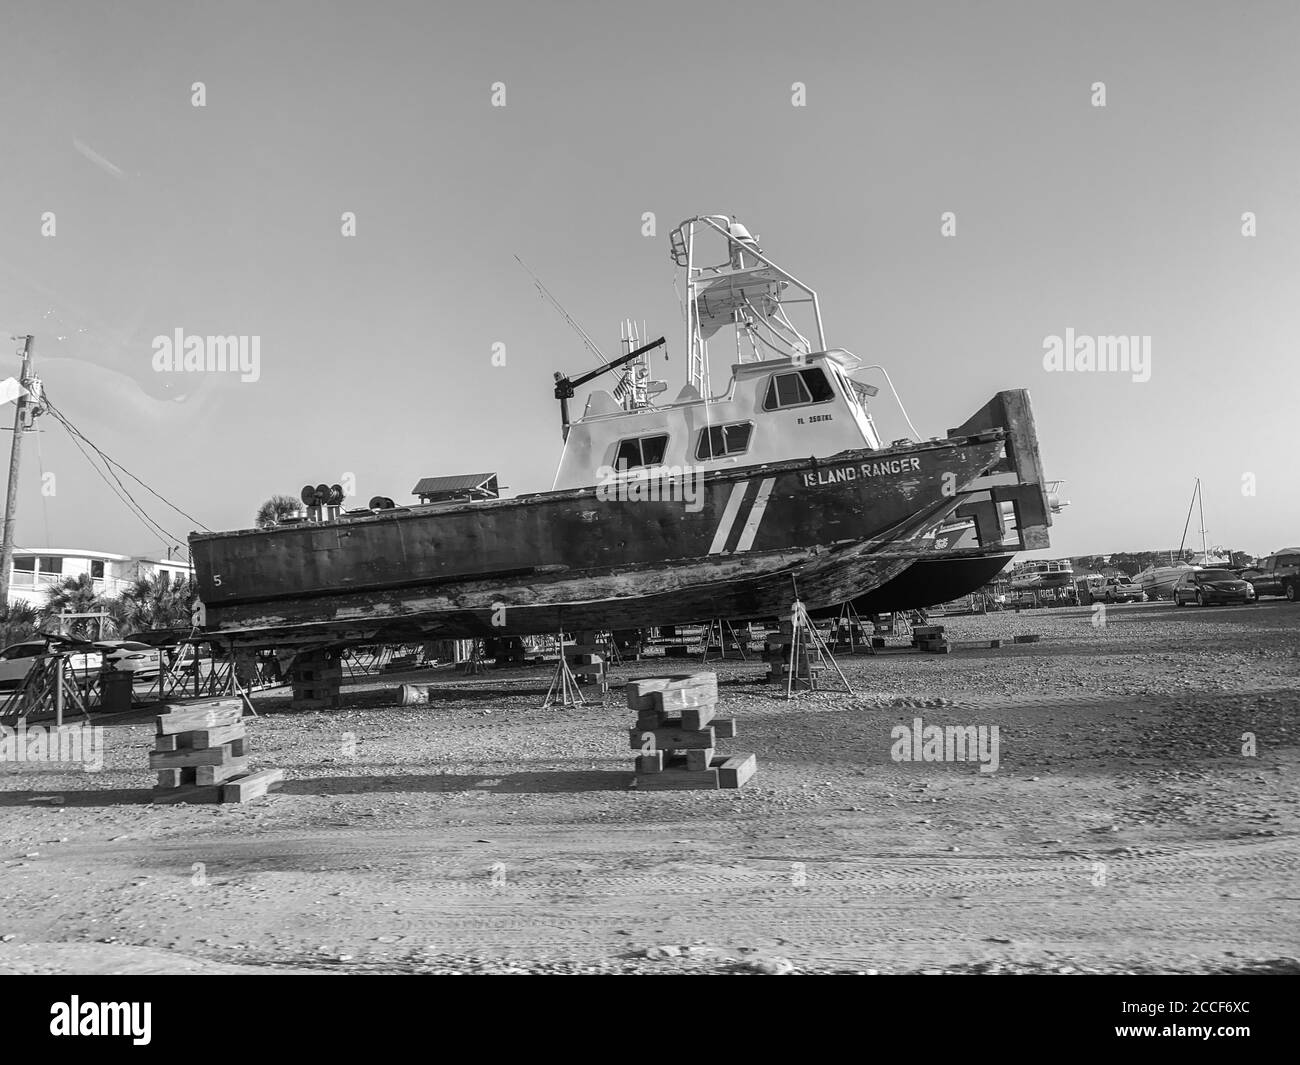 Image en noir et blanc d'un bateau de pêche stationné dans un parc de bateaux. Le bateau est hors de l'eau, ce qui vous permet de voir tout le bateau. Banque D'Images